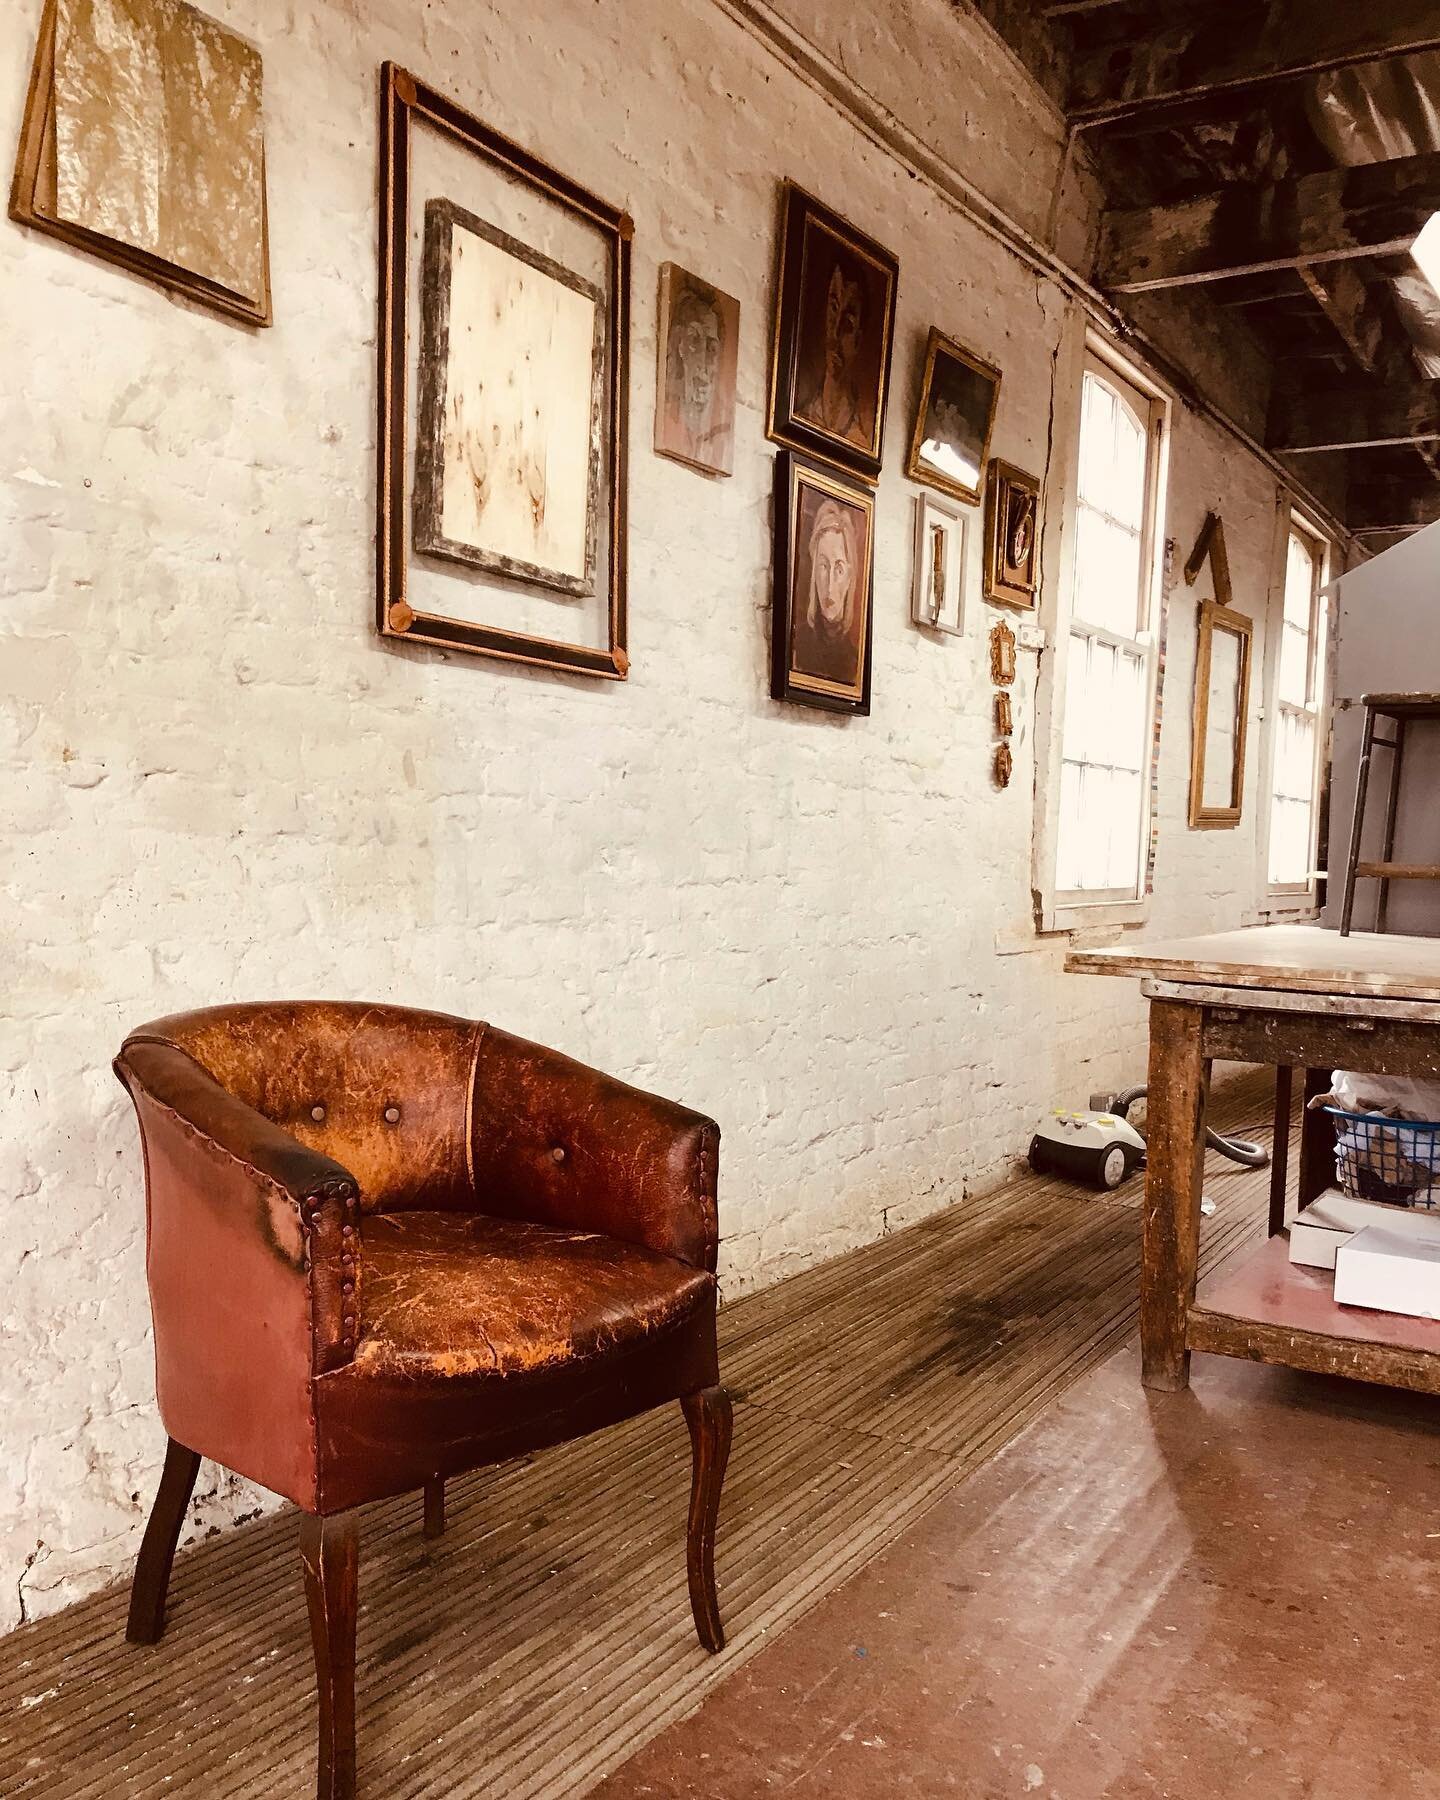 Old leather chair in studio on borrowed time 
#antiques #interiordesign #interiors #interiordecor #antiquedealer #london #anitquegardenfurniture #architecturalantiques #architecturalsalvage #paris #frenchantiques #antiquesofinstagram #interiordesigne